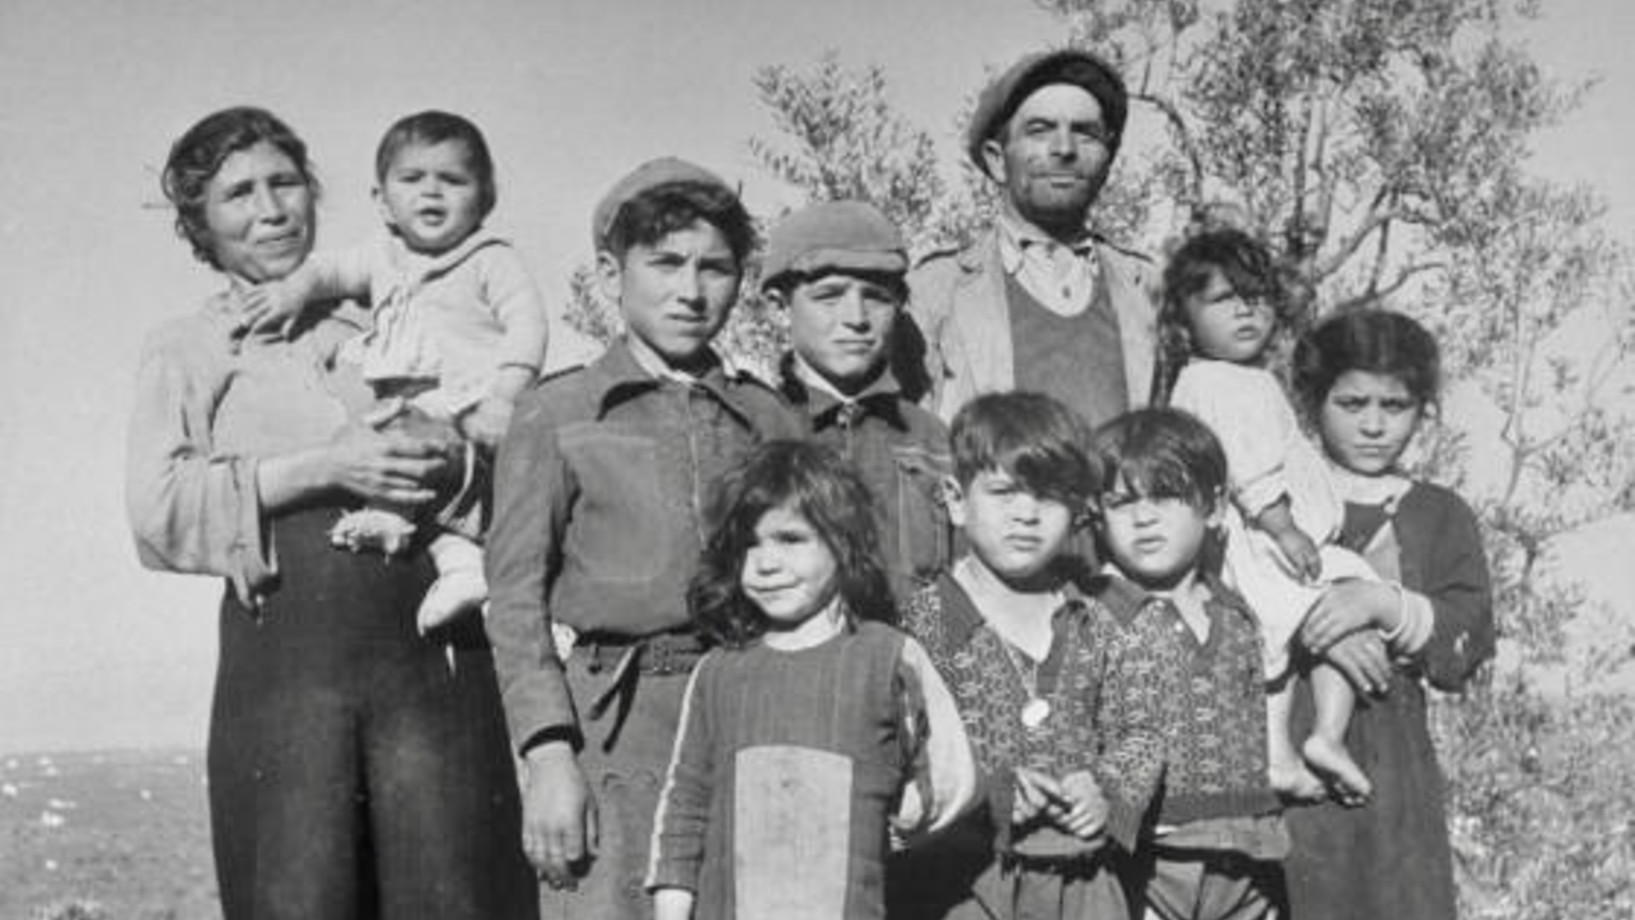 Das war einmal: Acht Kinder. Eine italienische Bauernfamilie in den Dreissigerjahren